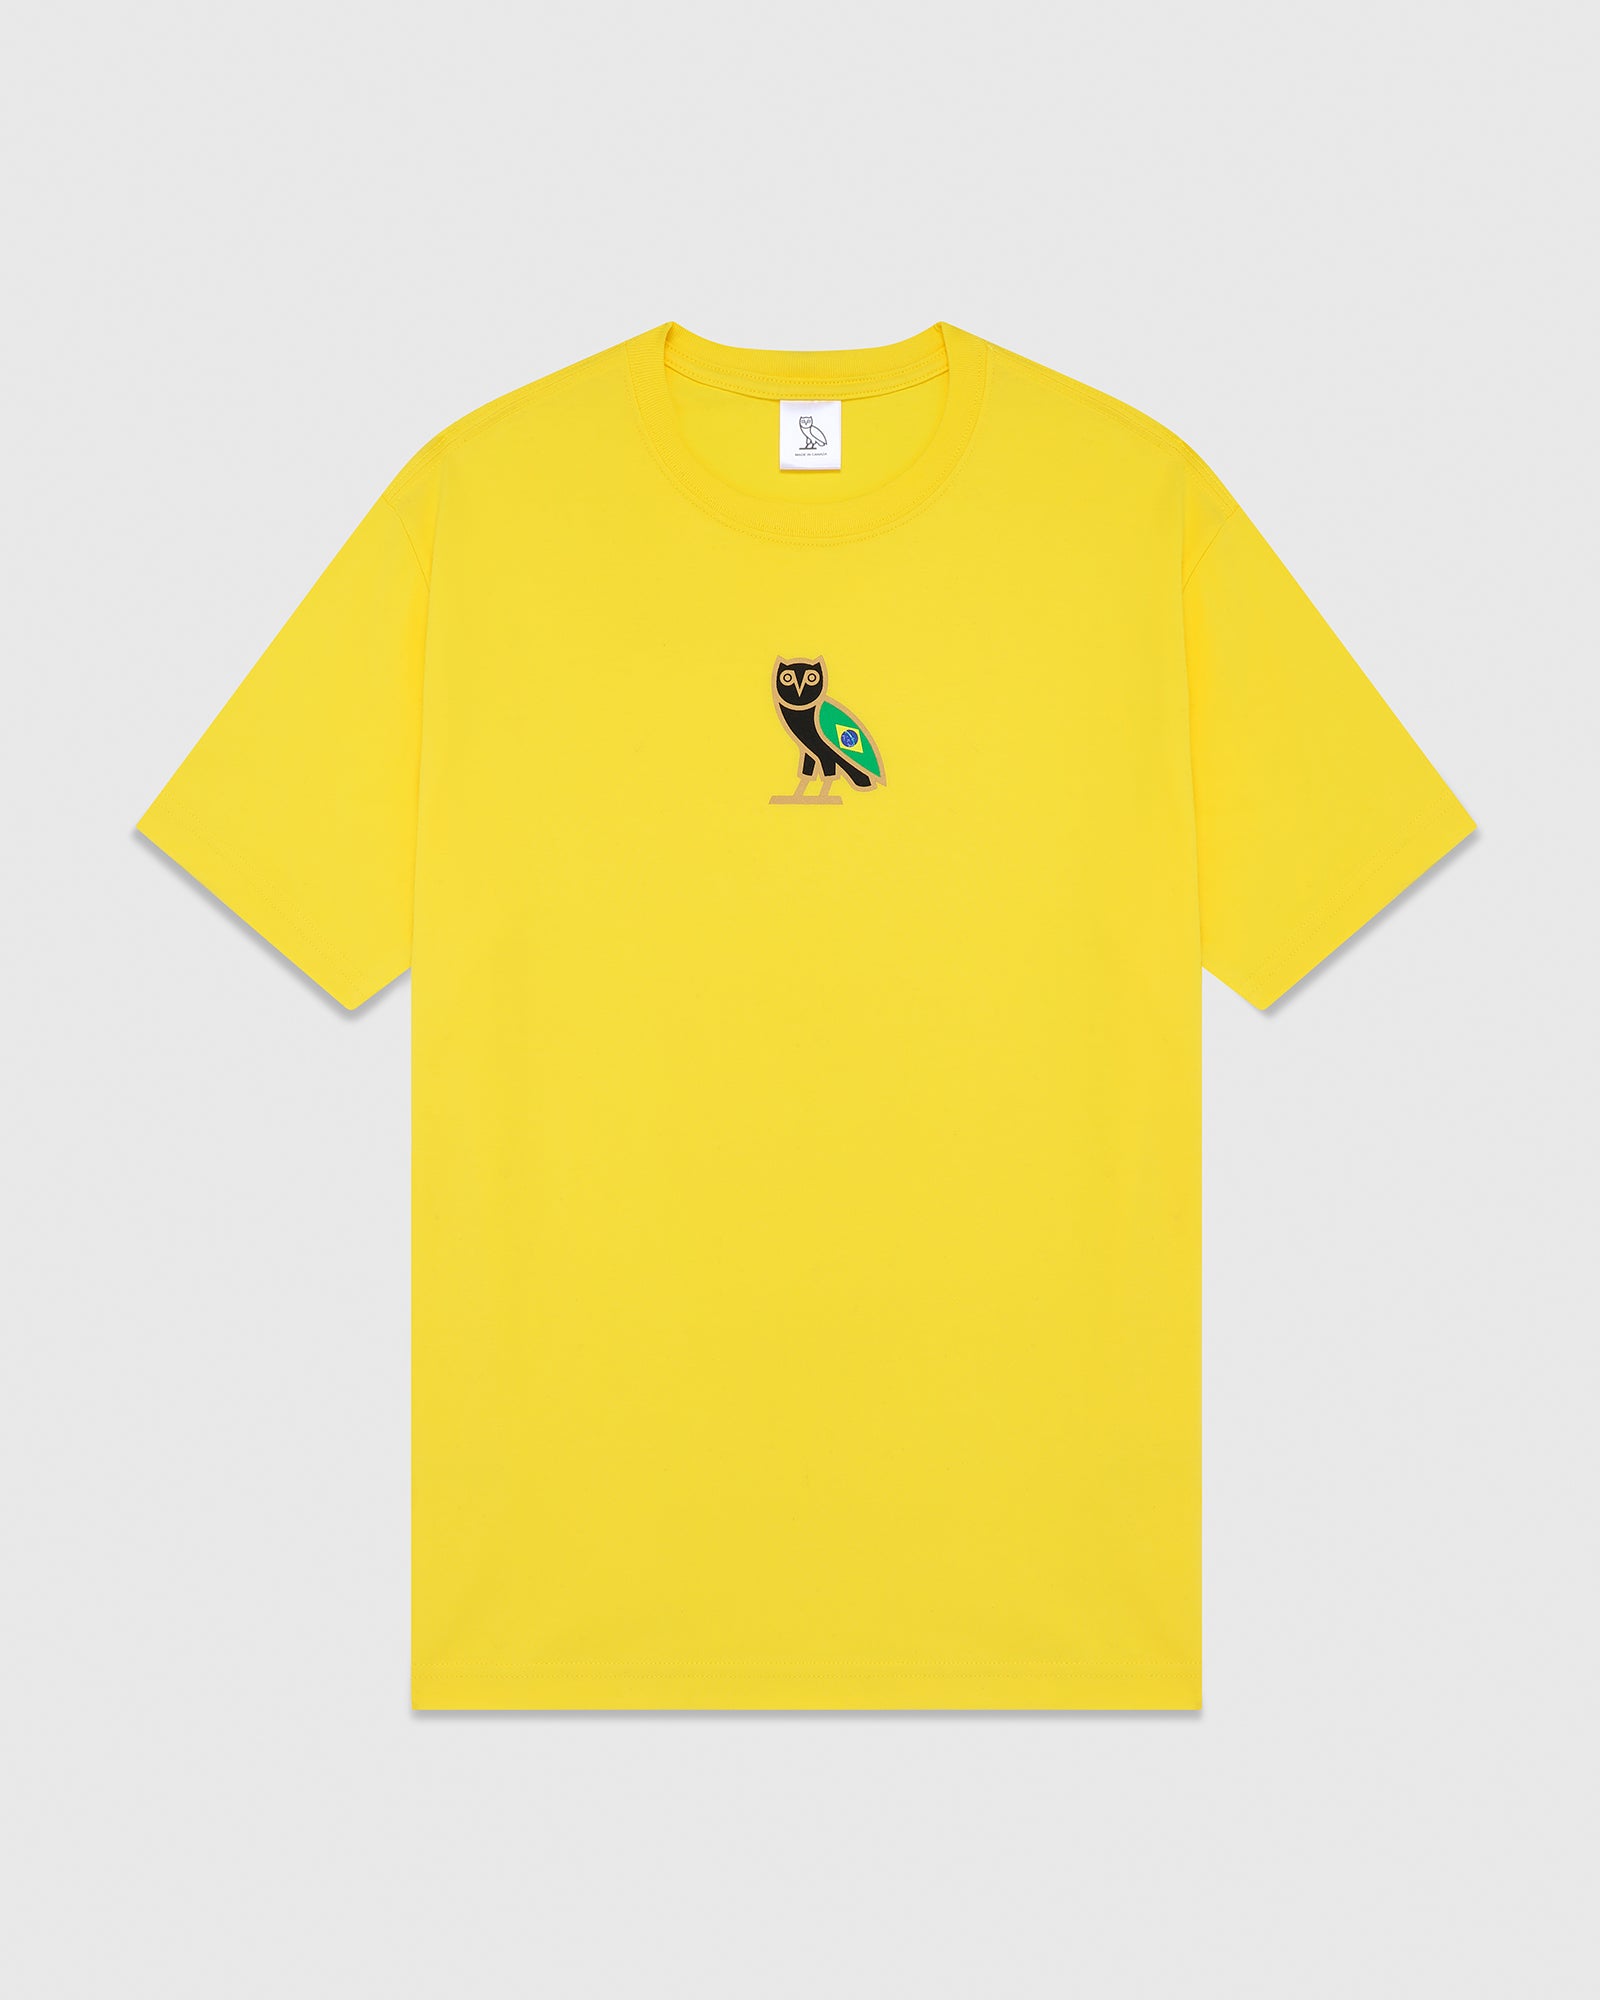 International Mini OG T-Shirt - Brazil Yellow - October's Very Own